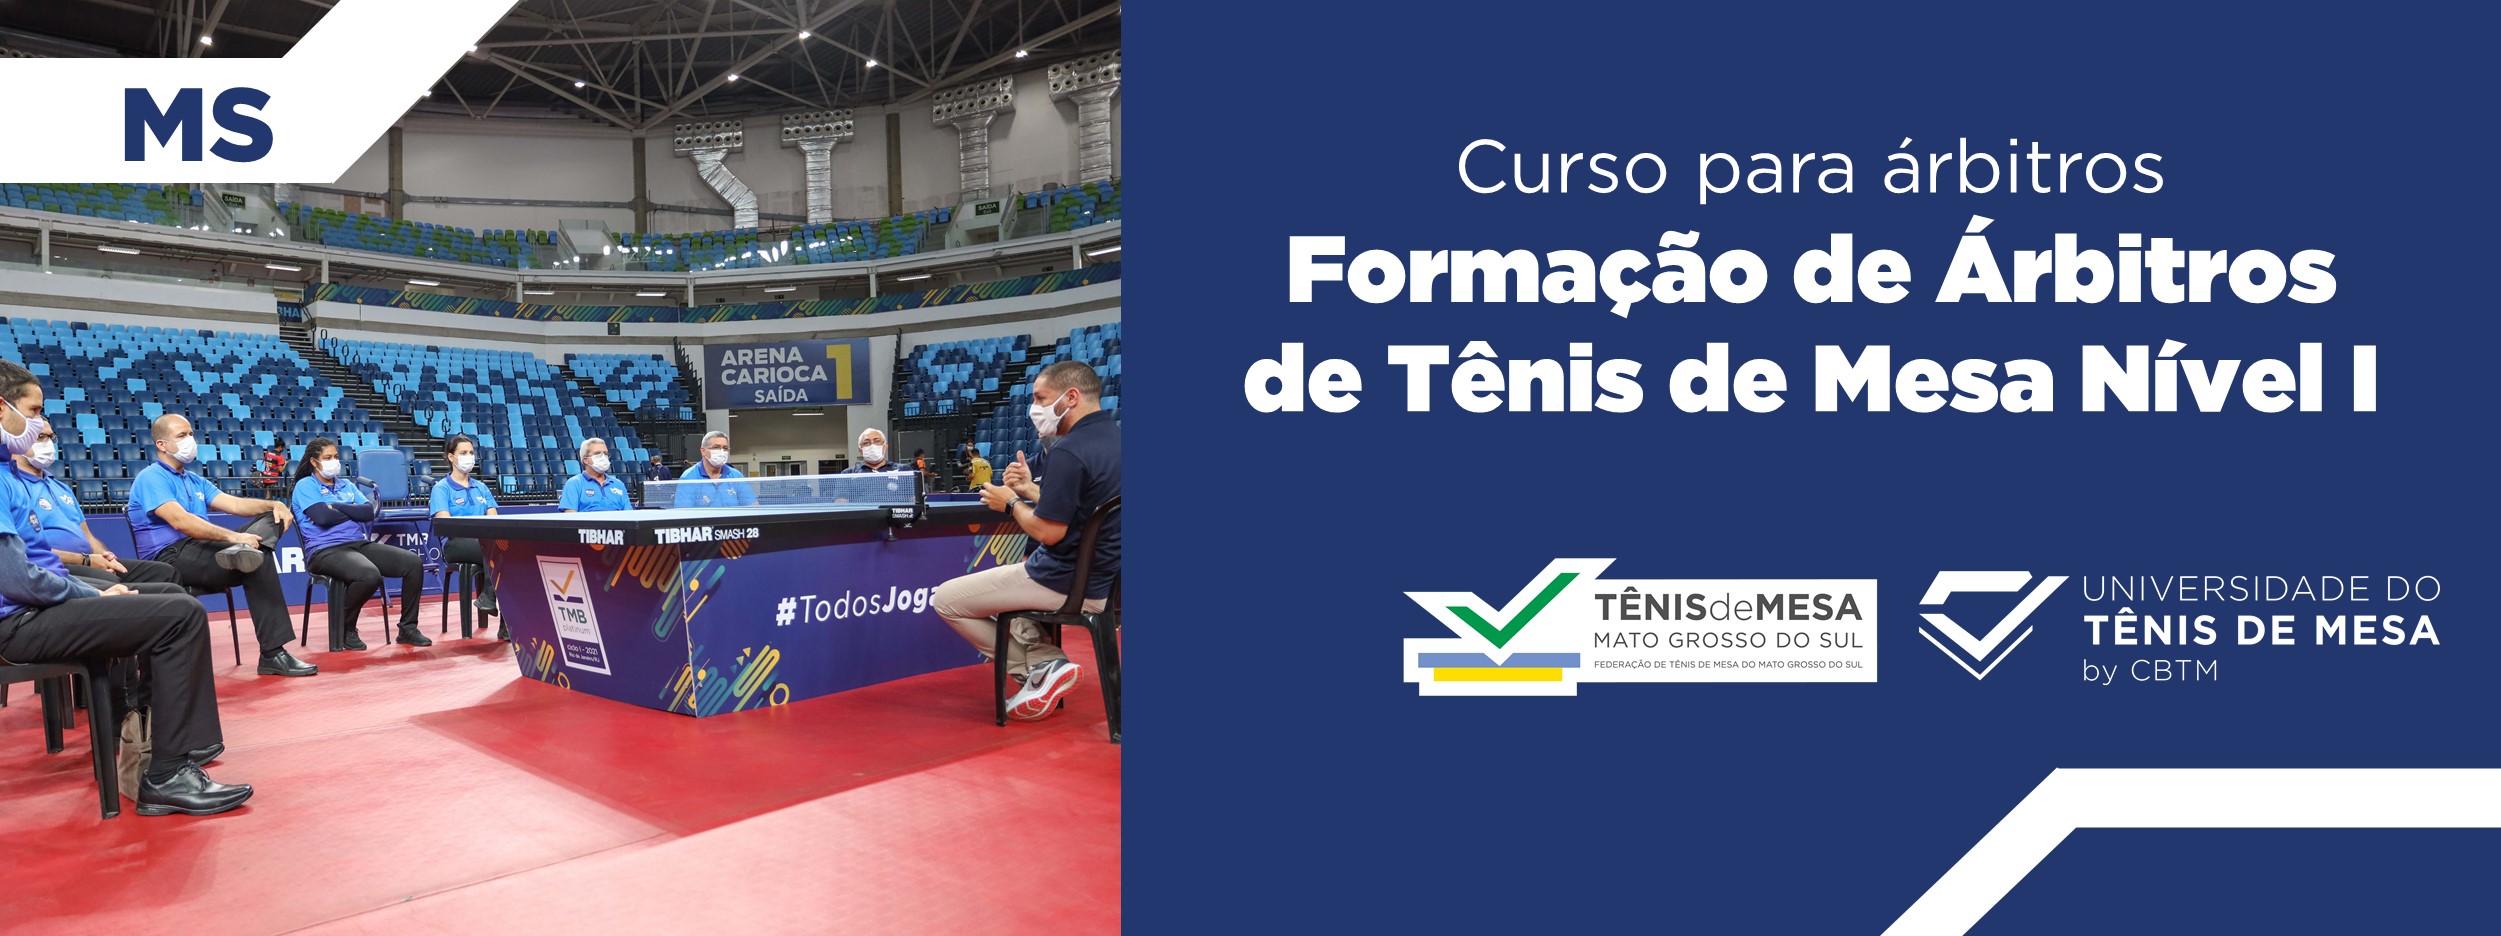 Banner - Formação de Árbitros de Tênis de Mesa  Nível I – Estadual - Federação de Tênis de Mesa do Mato Grosso do Sul